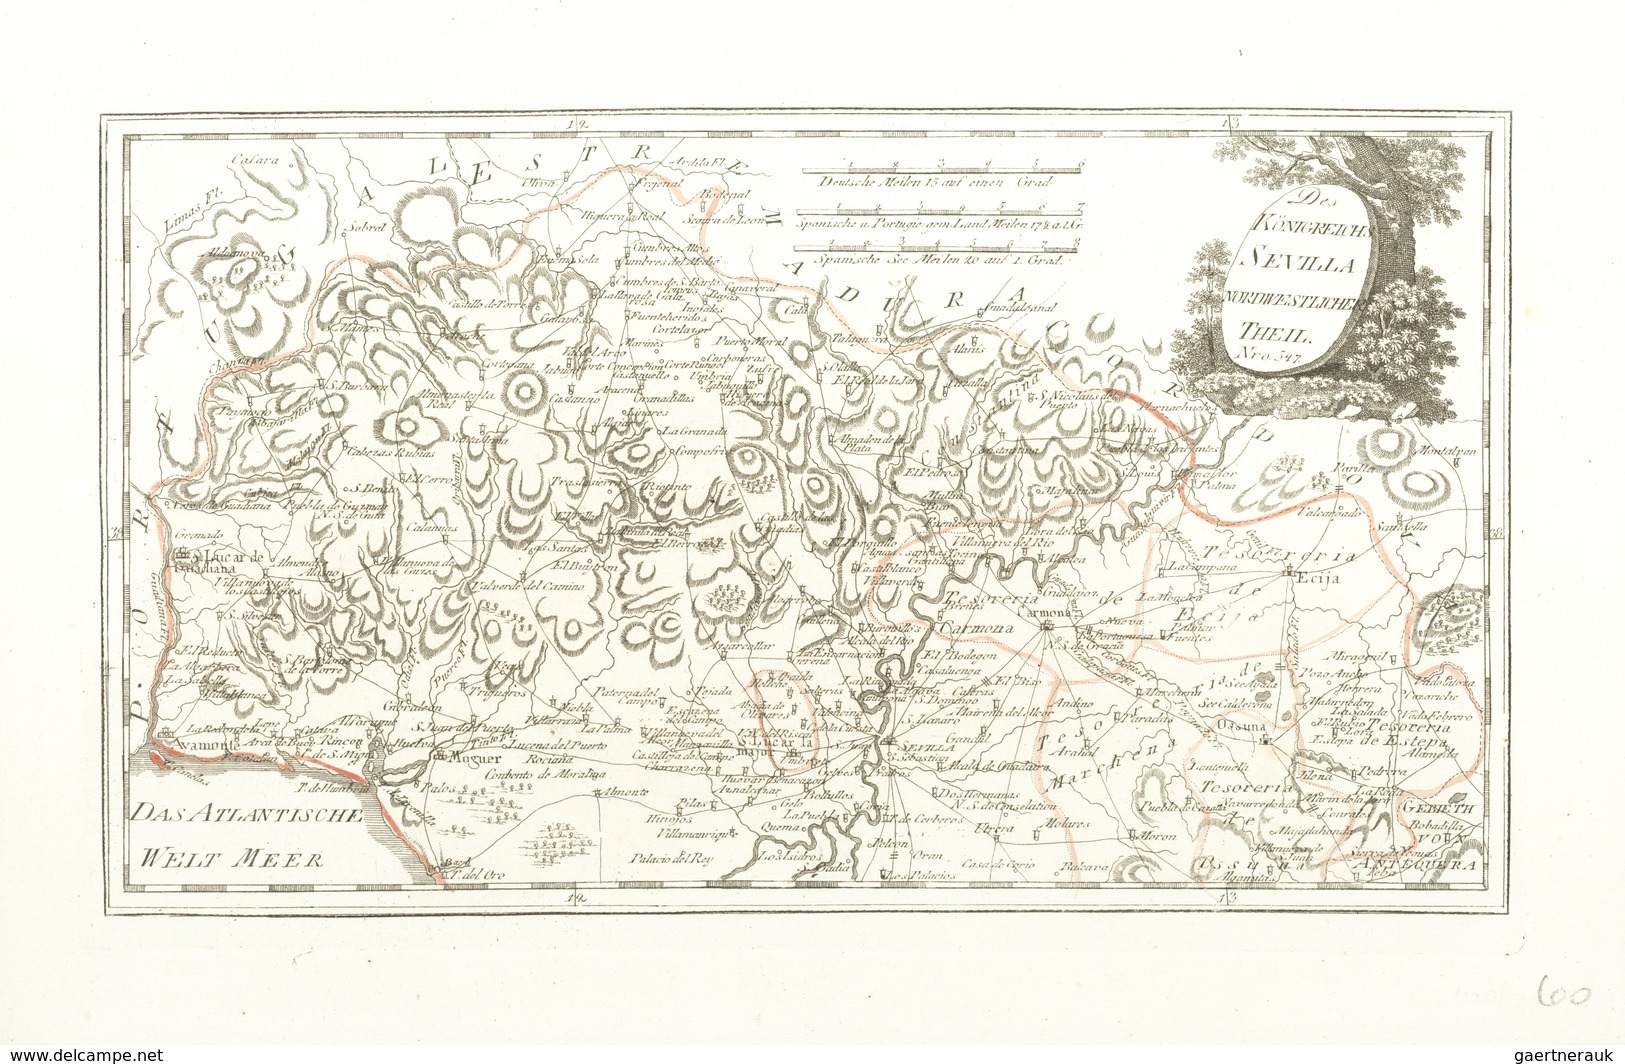 Landkarten Und Stiche: 1789. "Des Koenigreichs Sevilla Nordwestliche Theil" From Schauplatz Der Funf - Geography